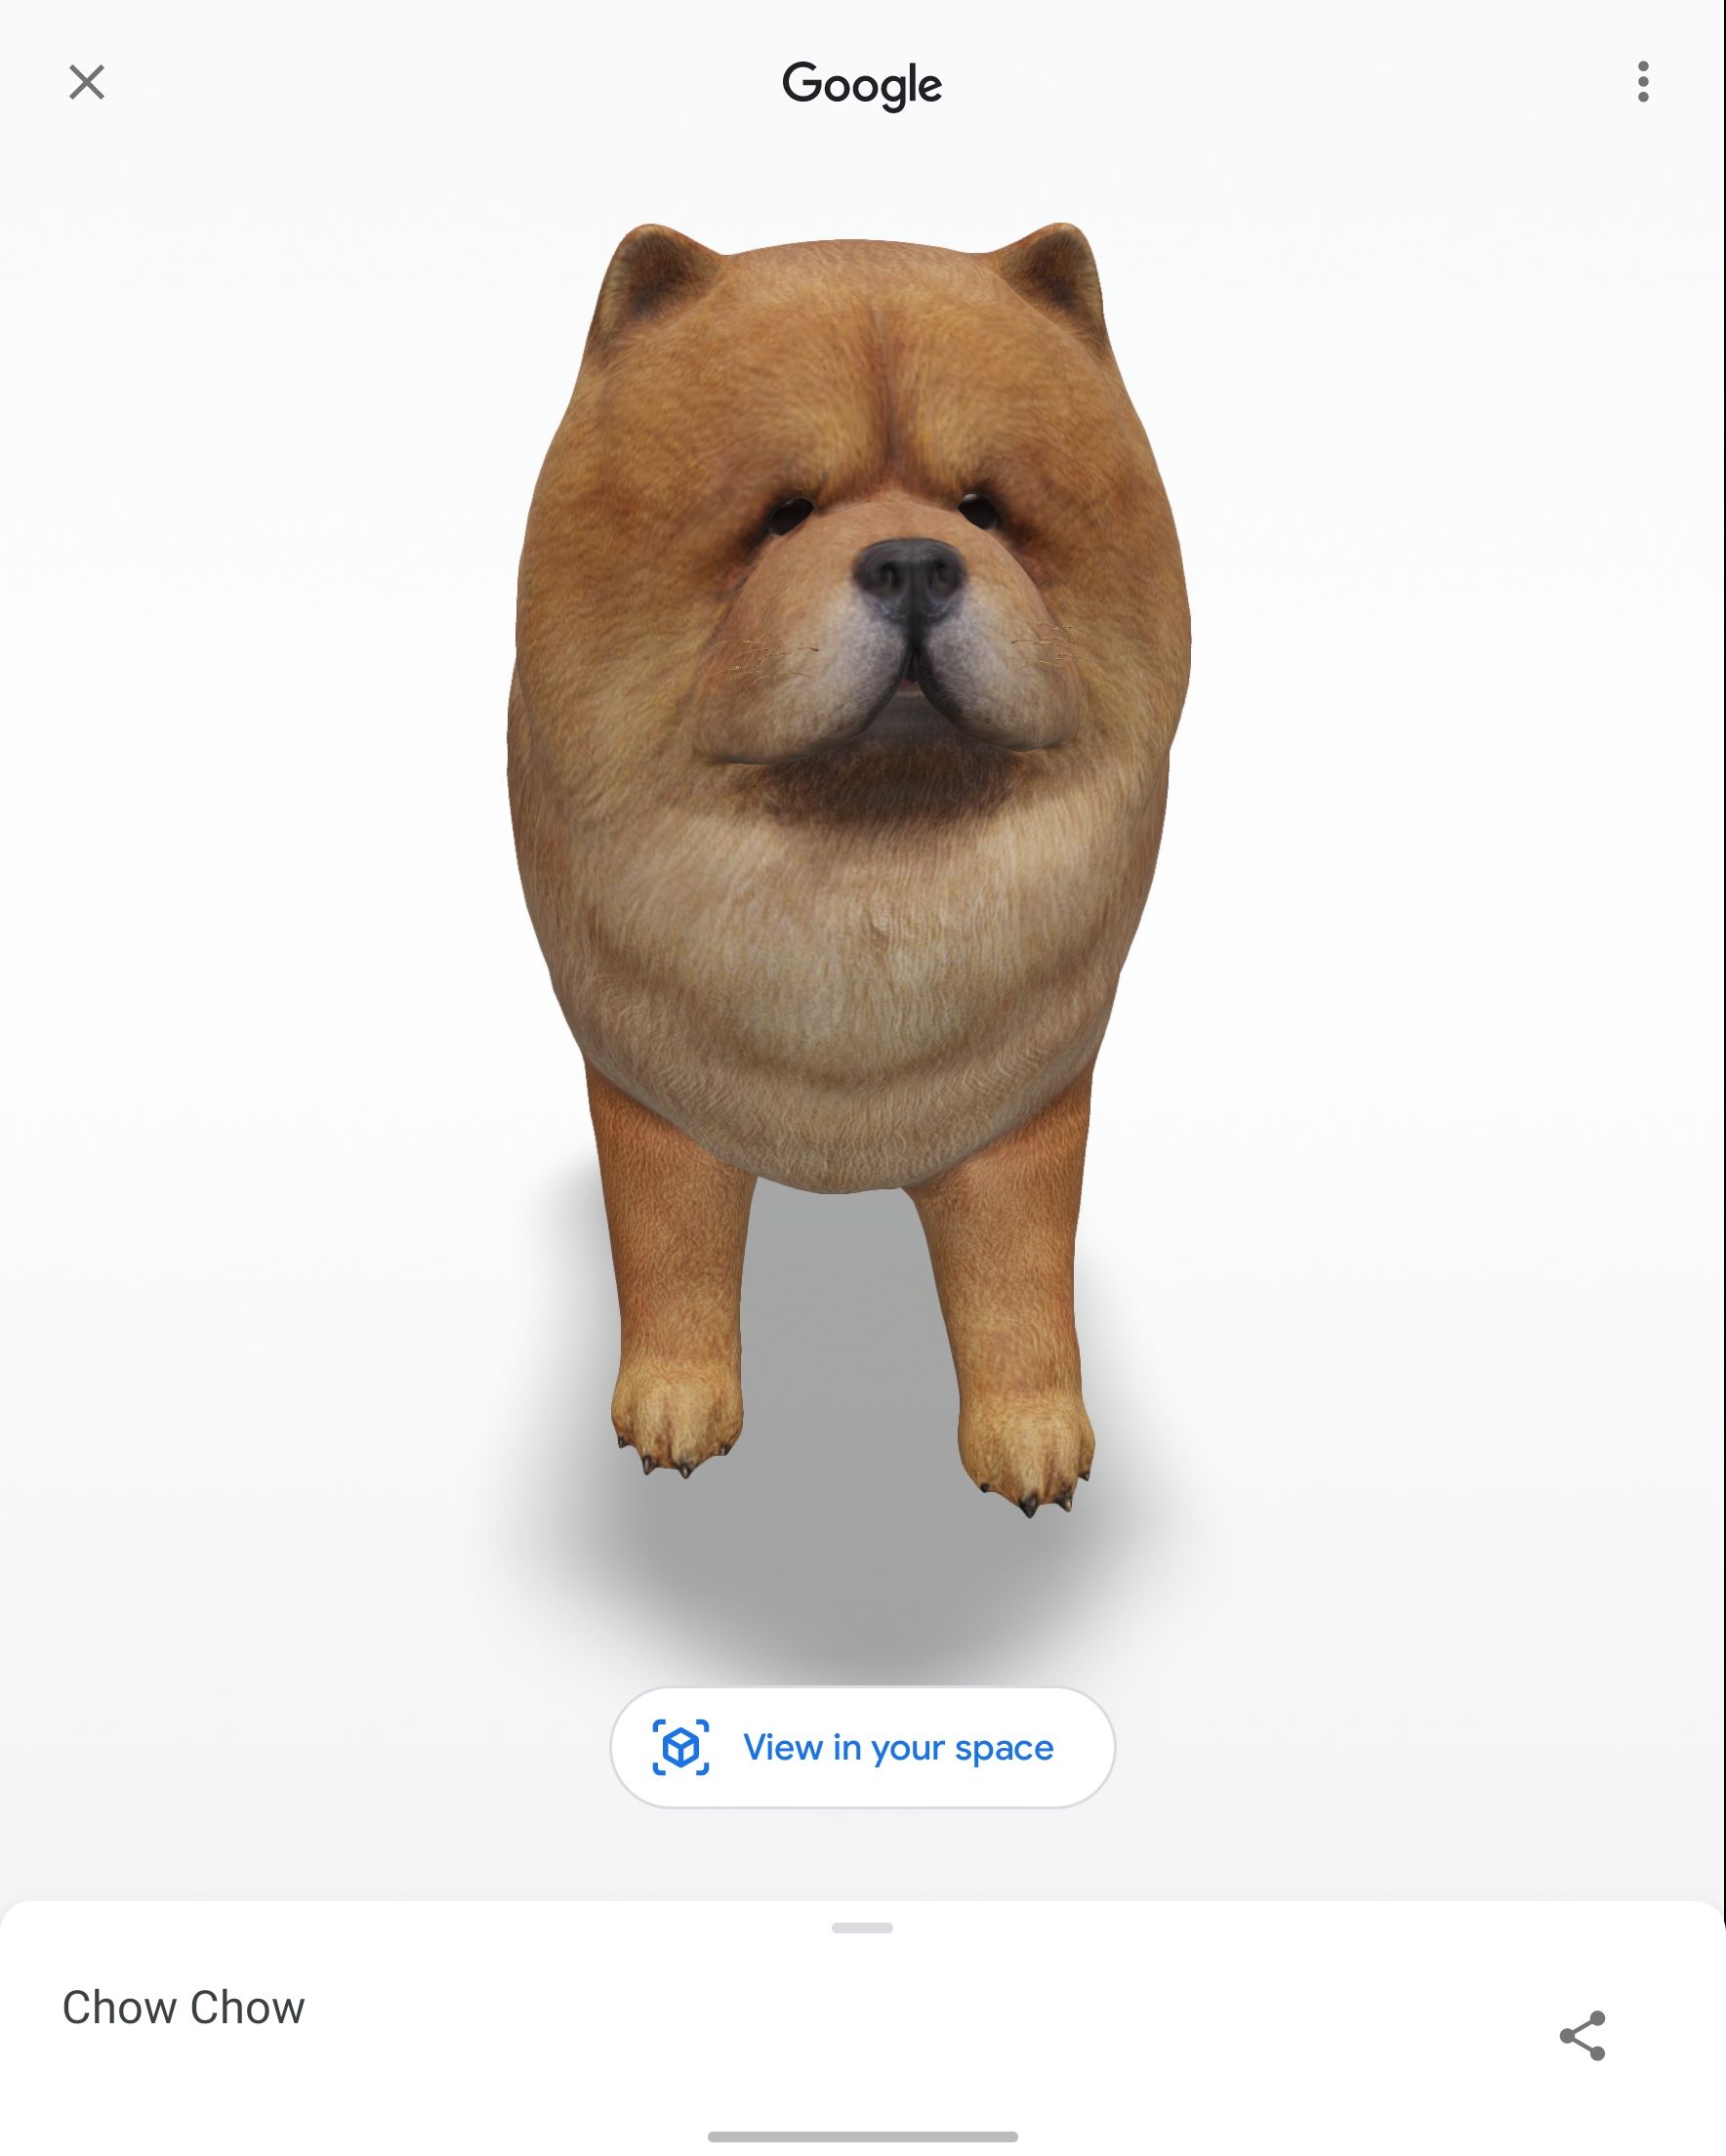 Captura de tela de um cachorro AR gerado pelo Google